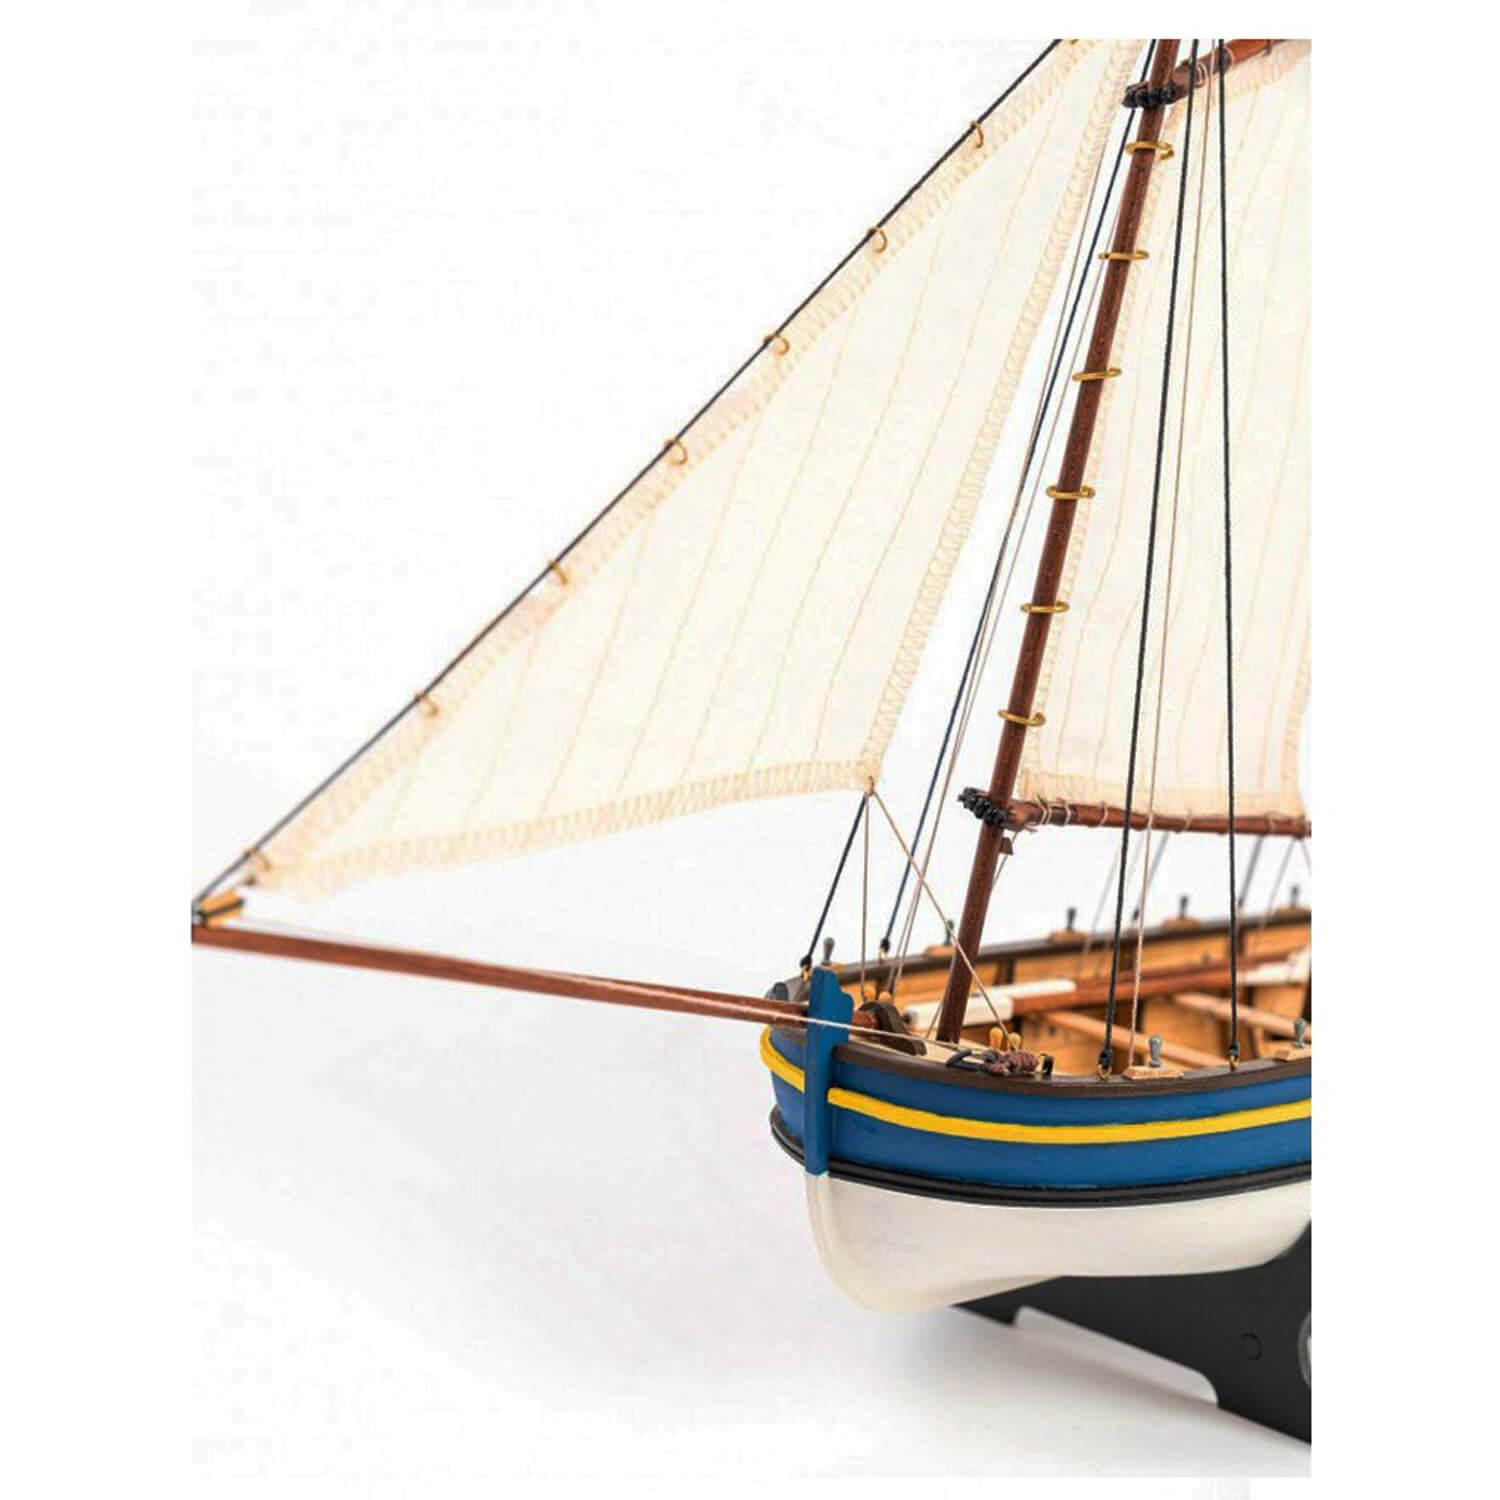 Maqueta de barco de madera: BARCO DEL HMS ENDEAVOUR